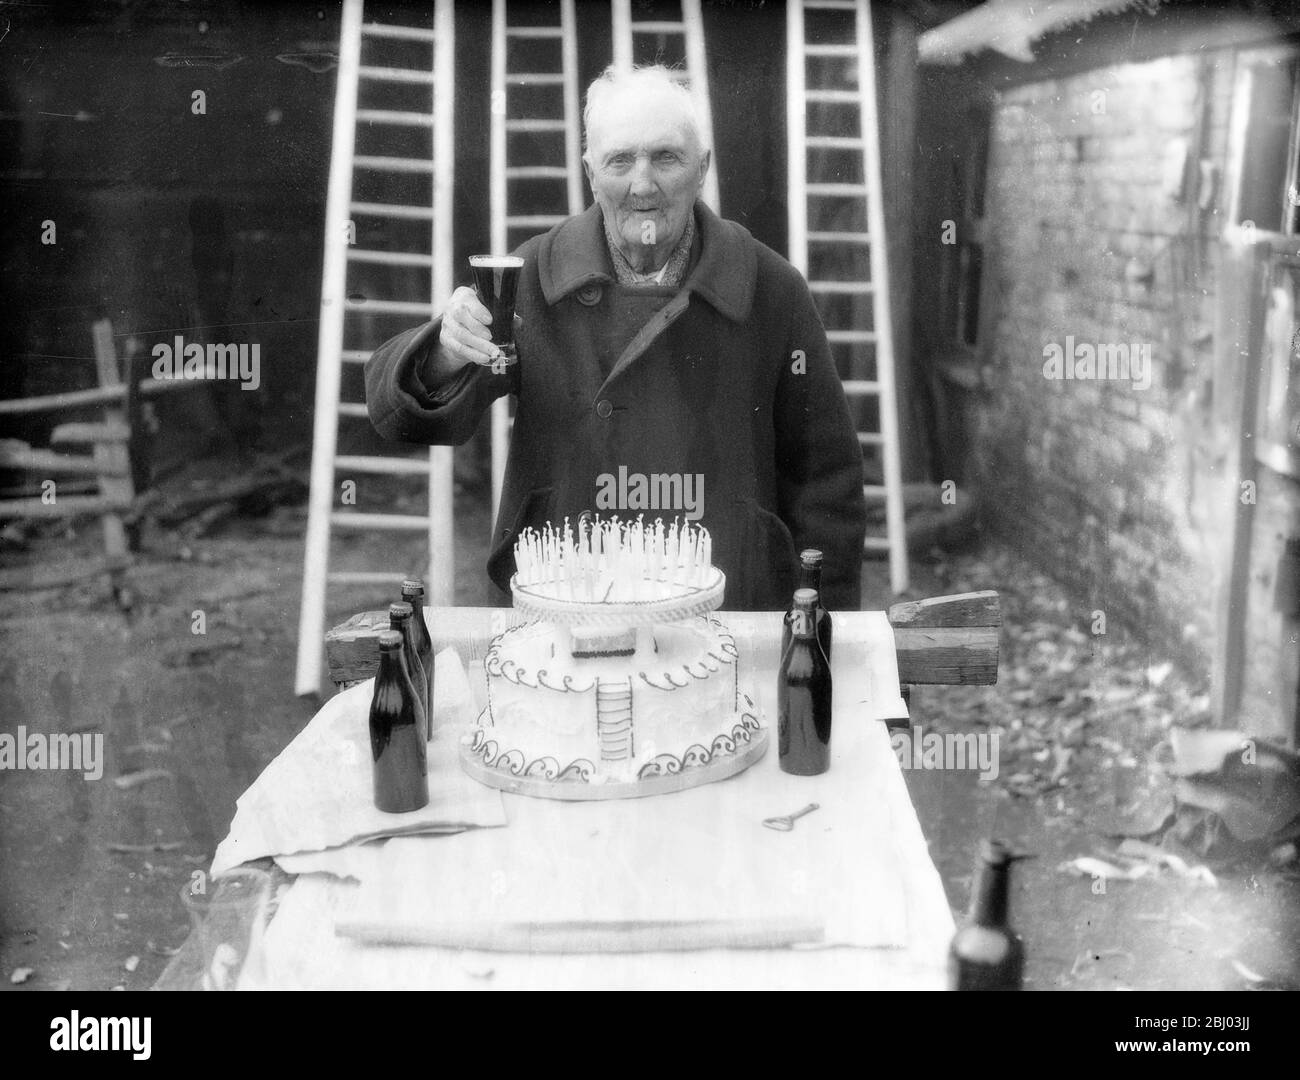 Southampton Ladder King è pronto per il suo 105° compleanno . - il signor James si è fatto un miglio con la sua enorme torta di compleanno che porta 105 candele. - 16 marzo 1935 Foto Stock